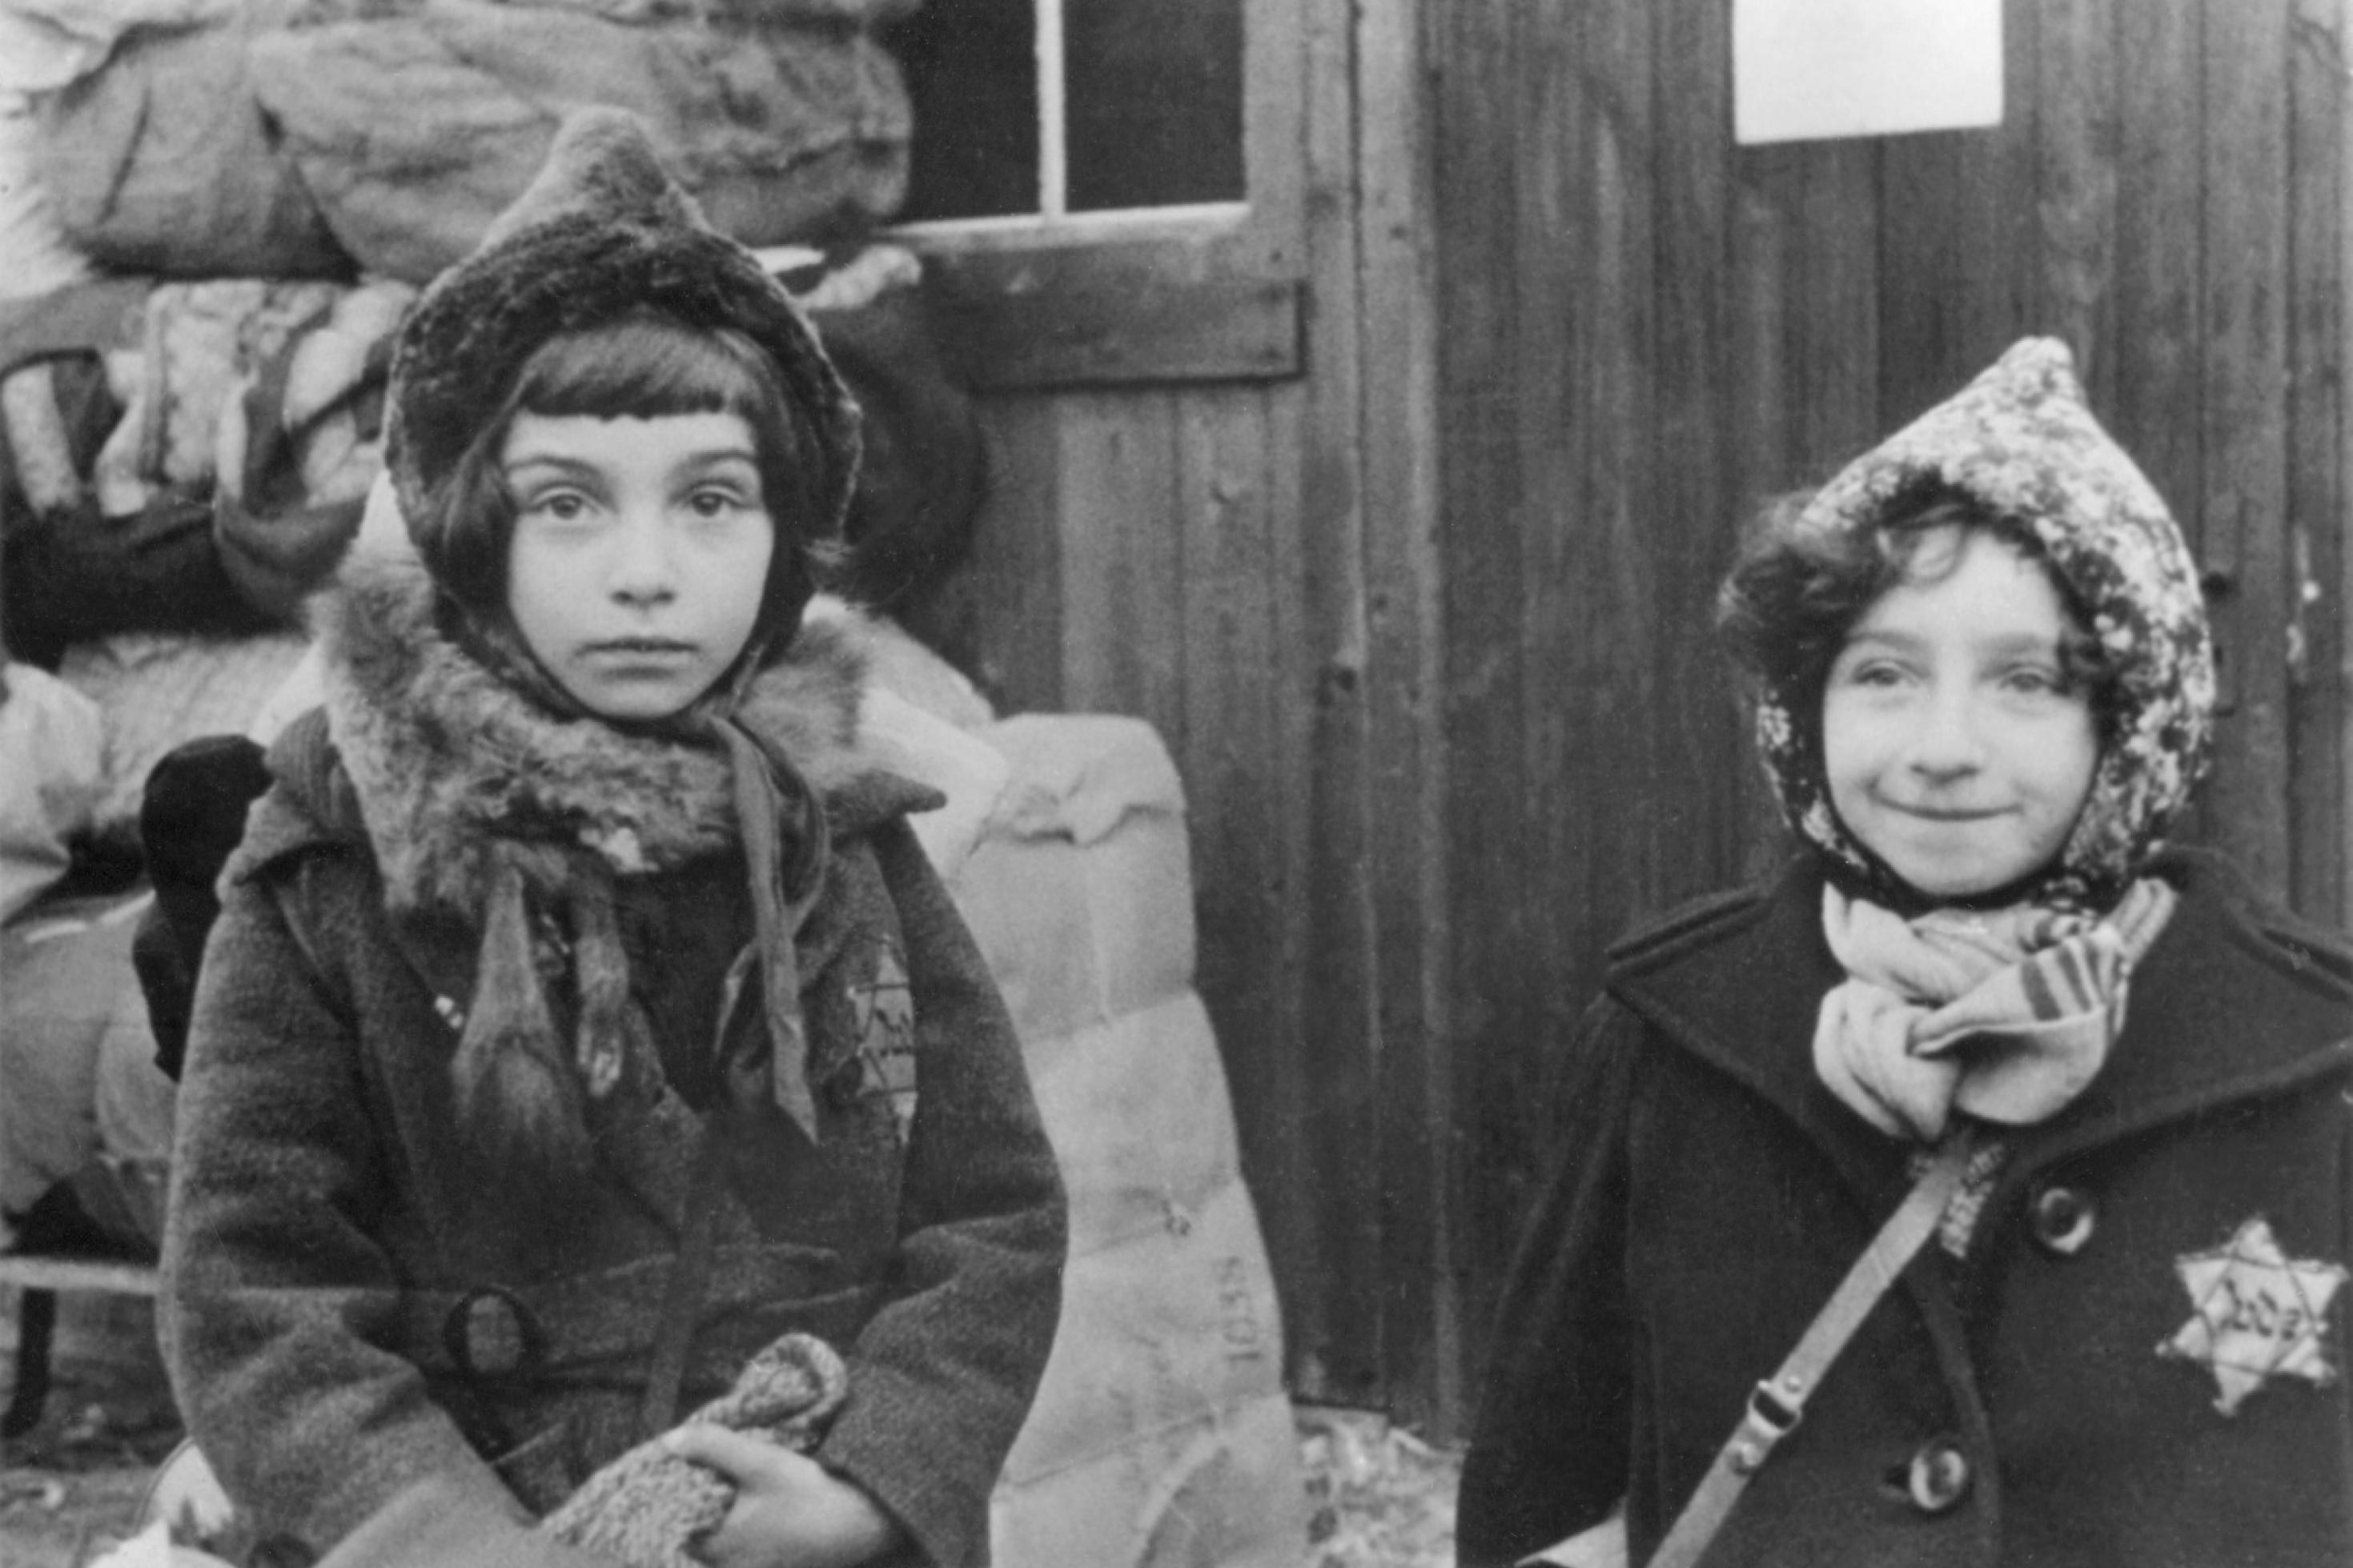 Schwarz-Weiß-Foto von zwei Mädchen in Winterkleidung mit Judenstern auf dem Mantel. Sie wurden wenig später nach Litauen verschleppt und ermordet.